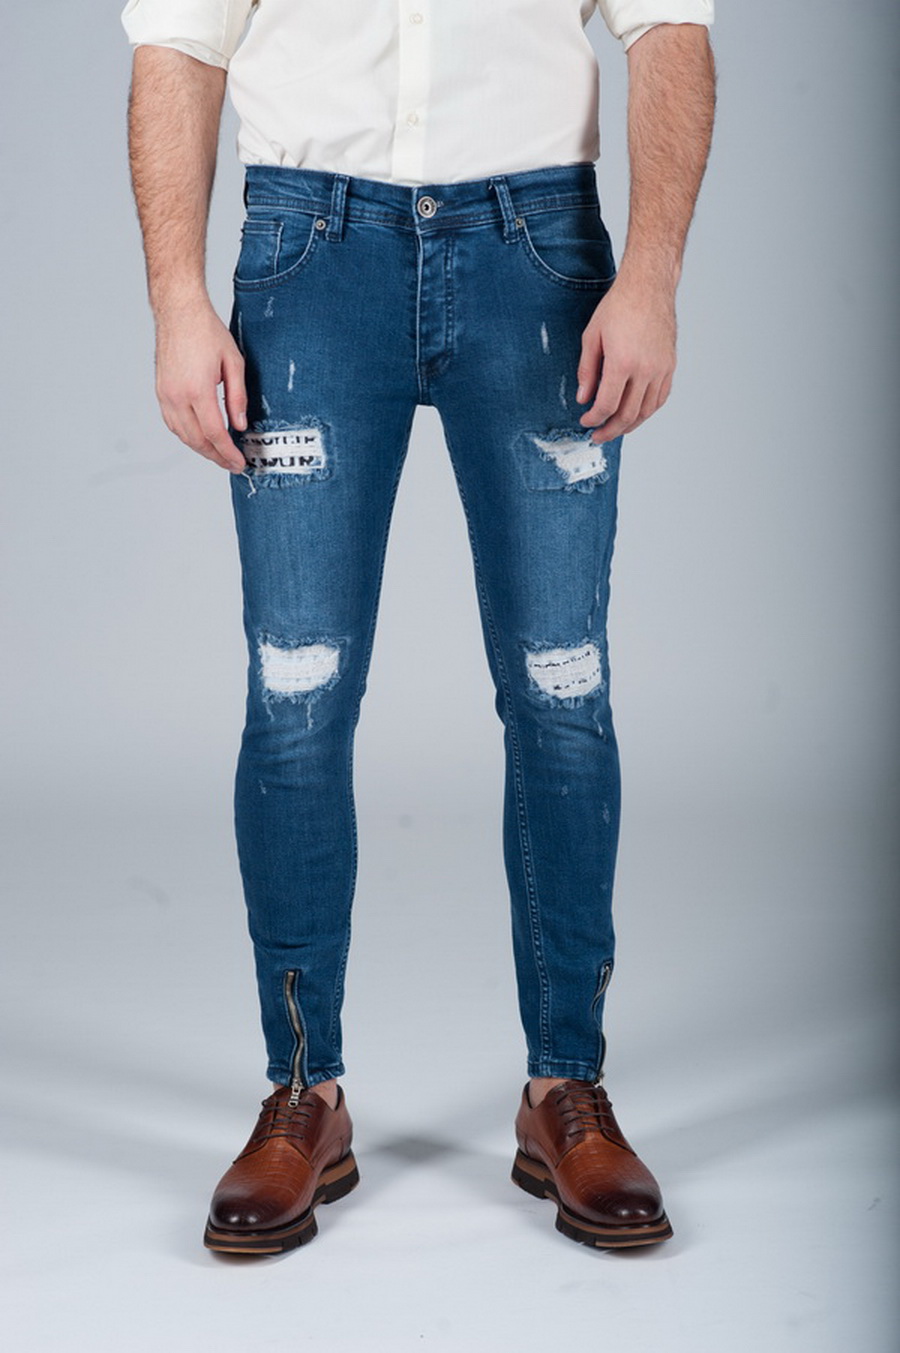 валберис стильные джинсы